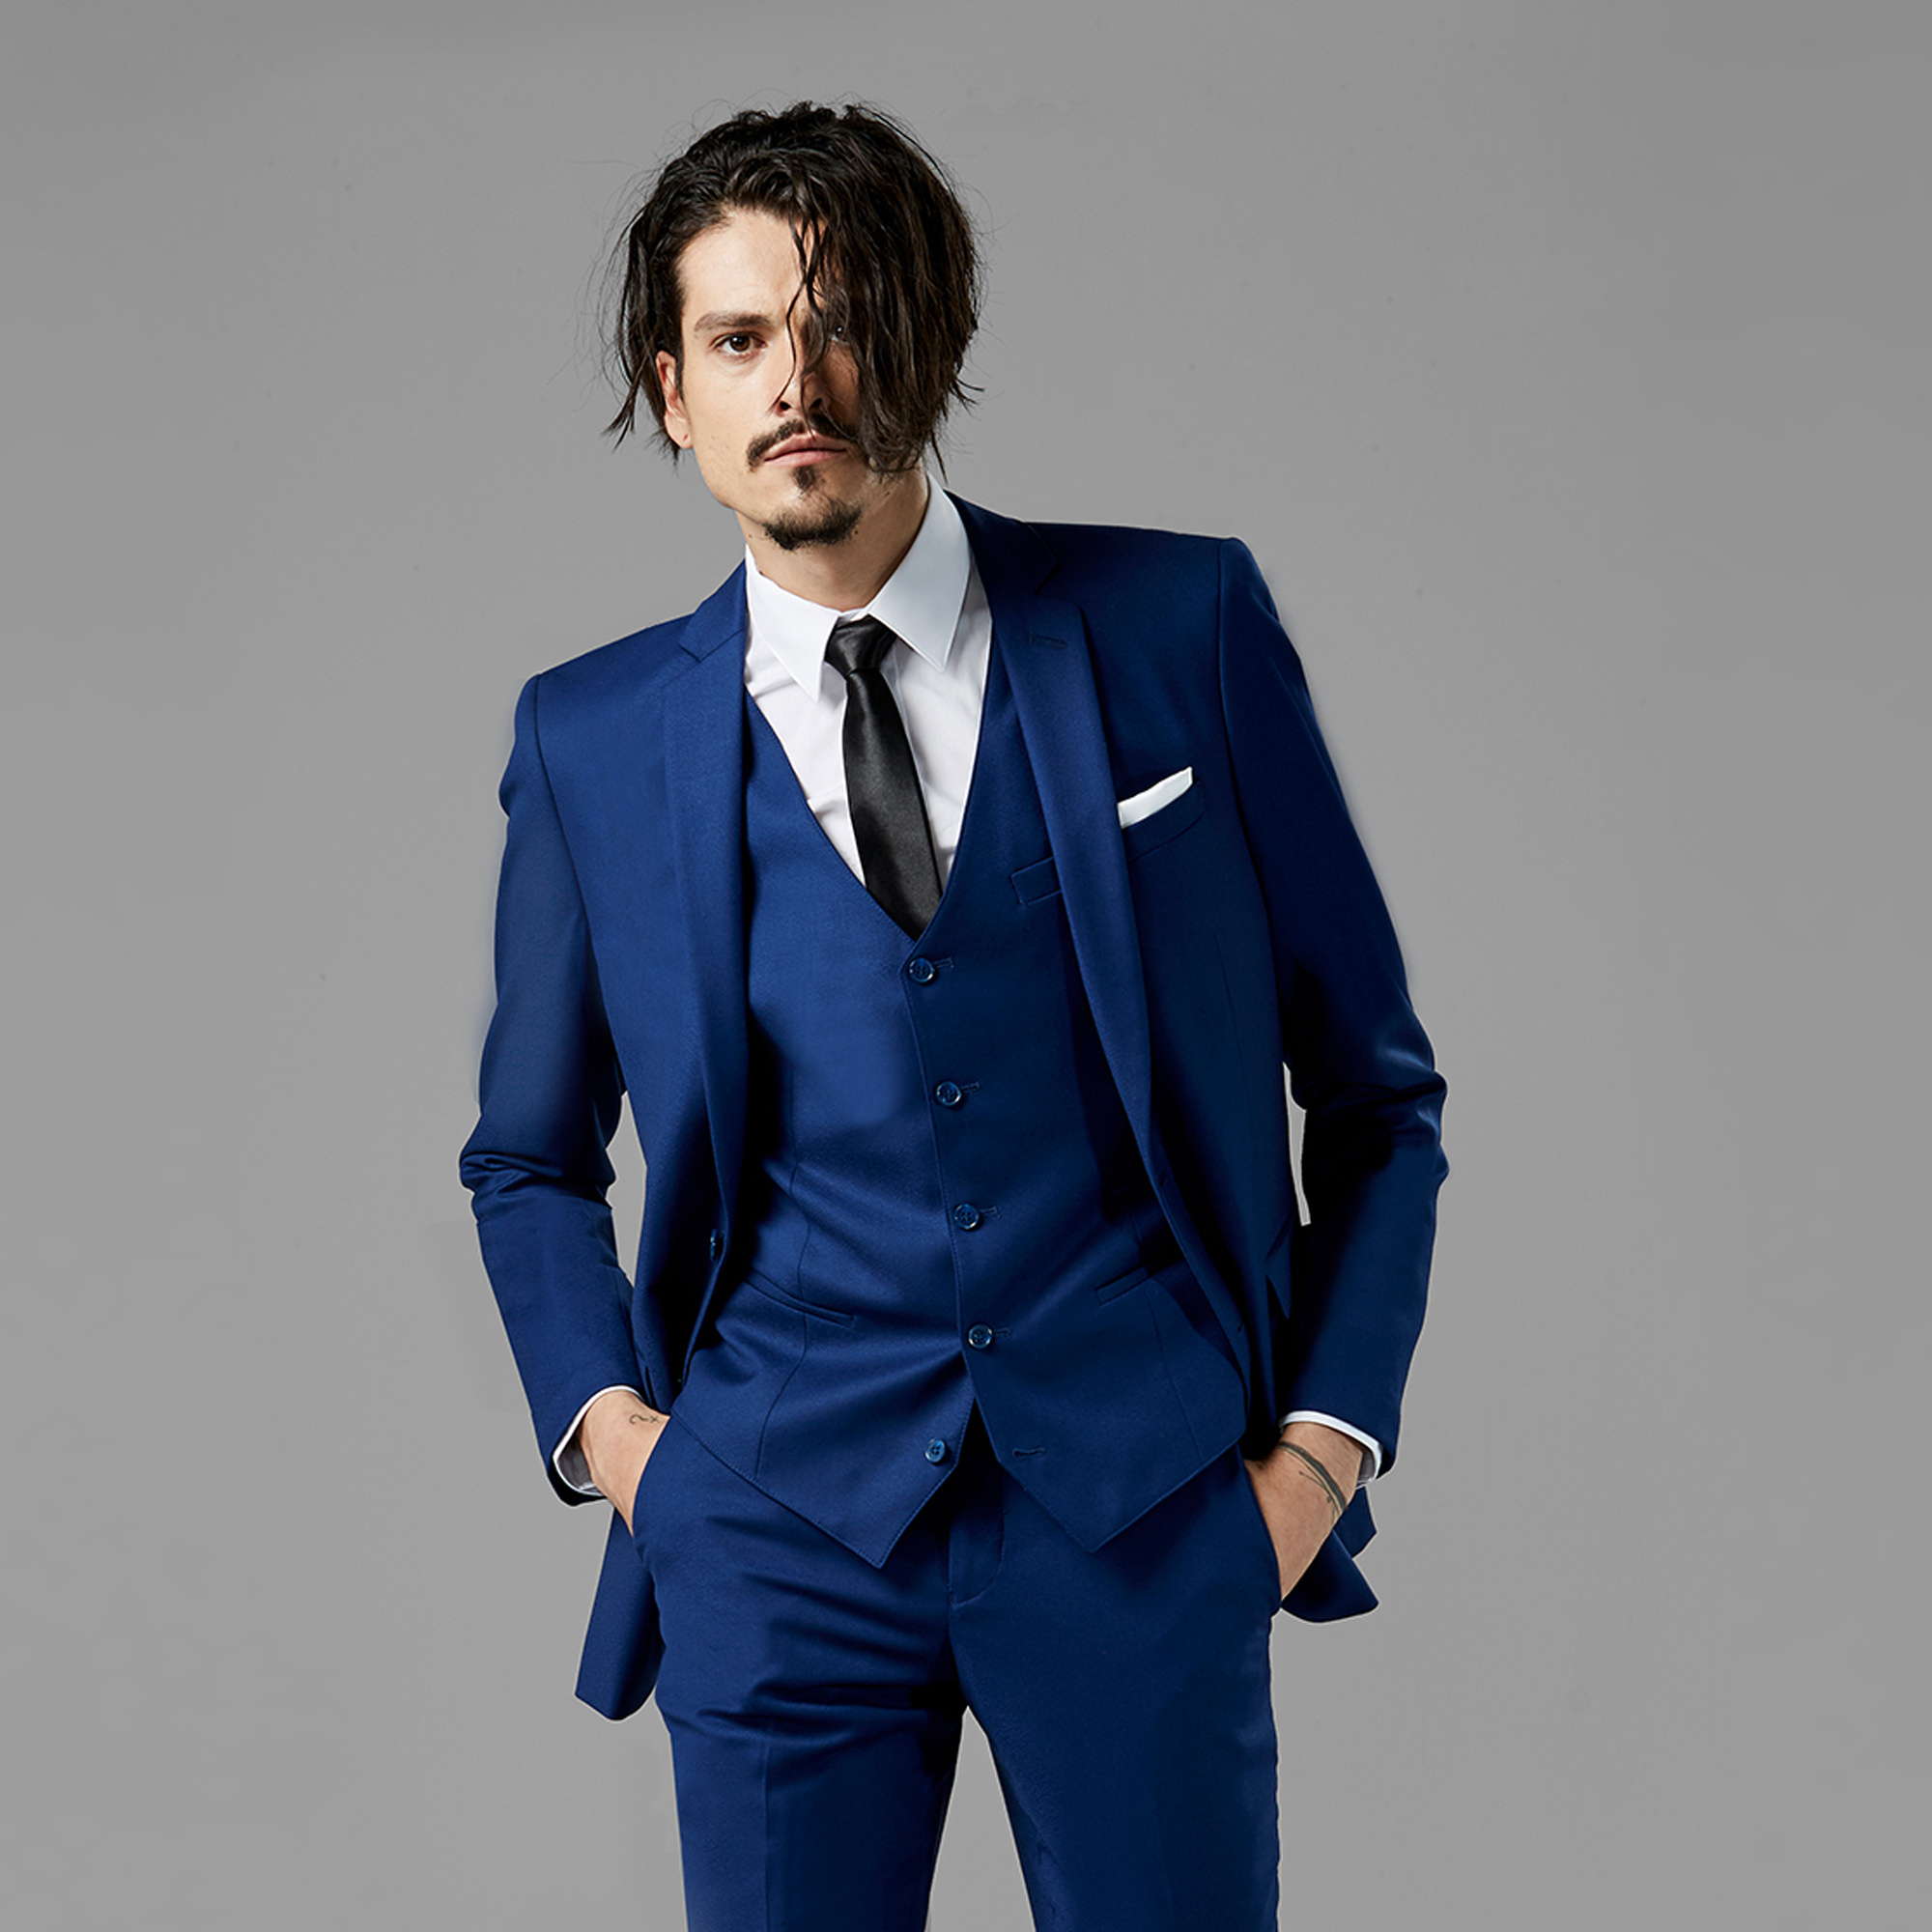 Discover more than 248 royal blue colour suit best